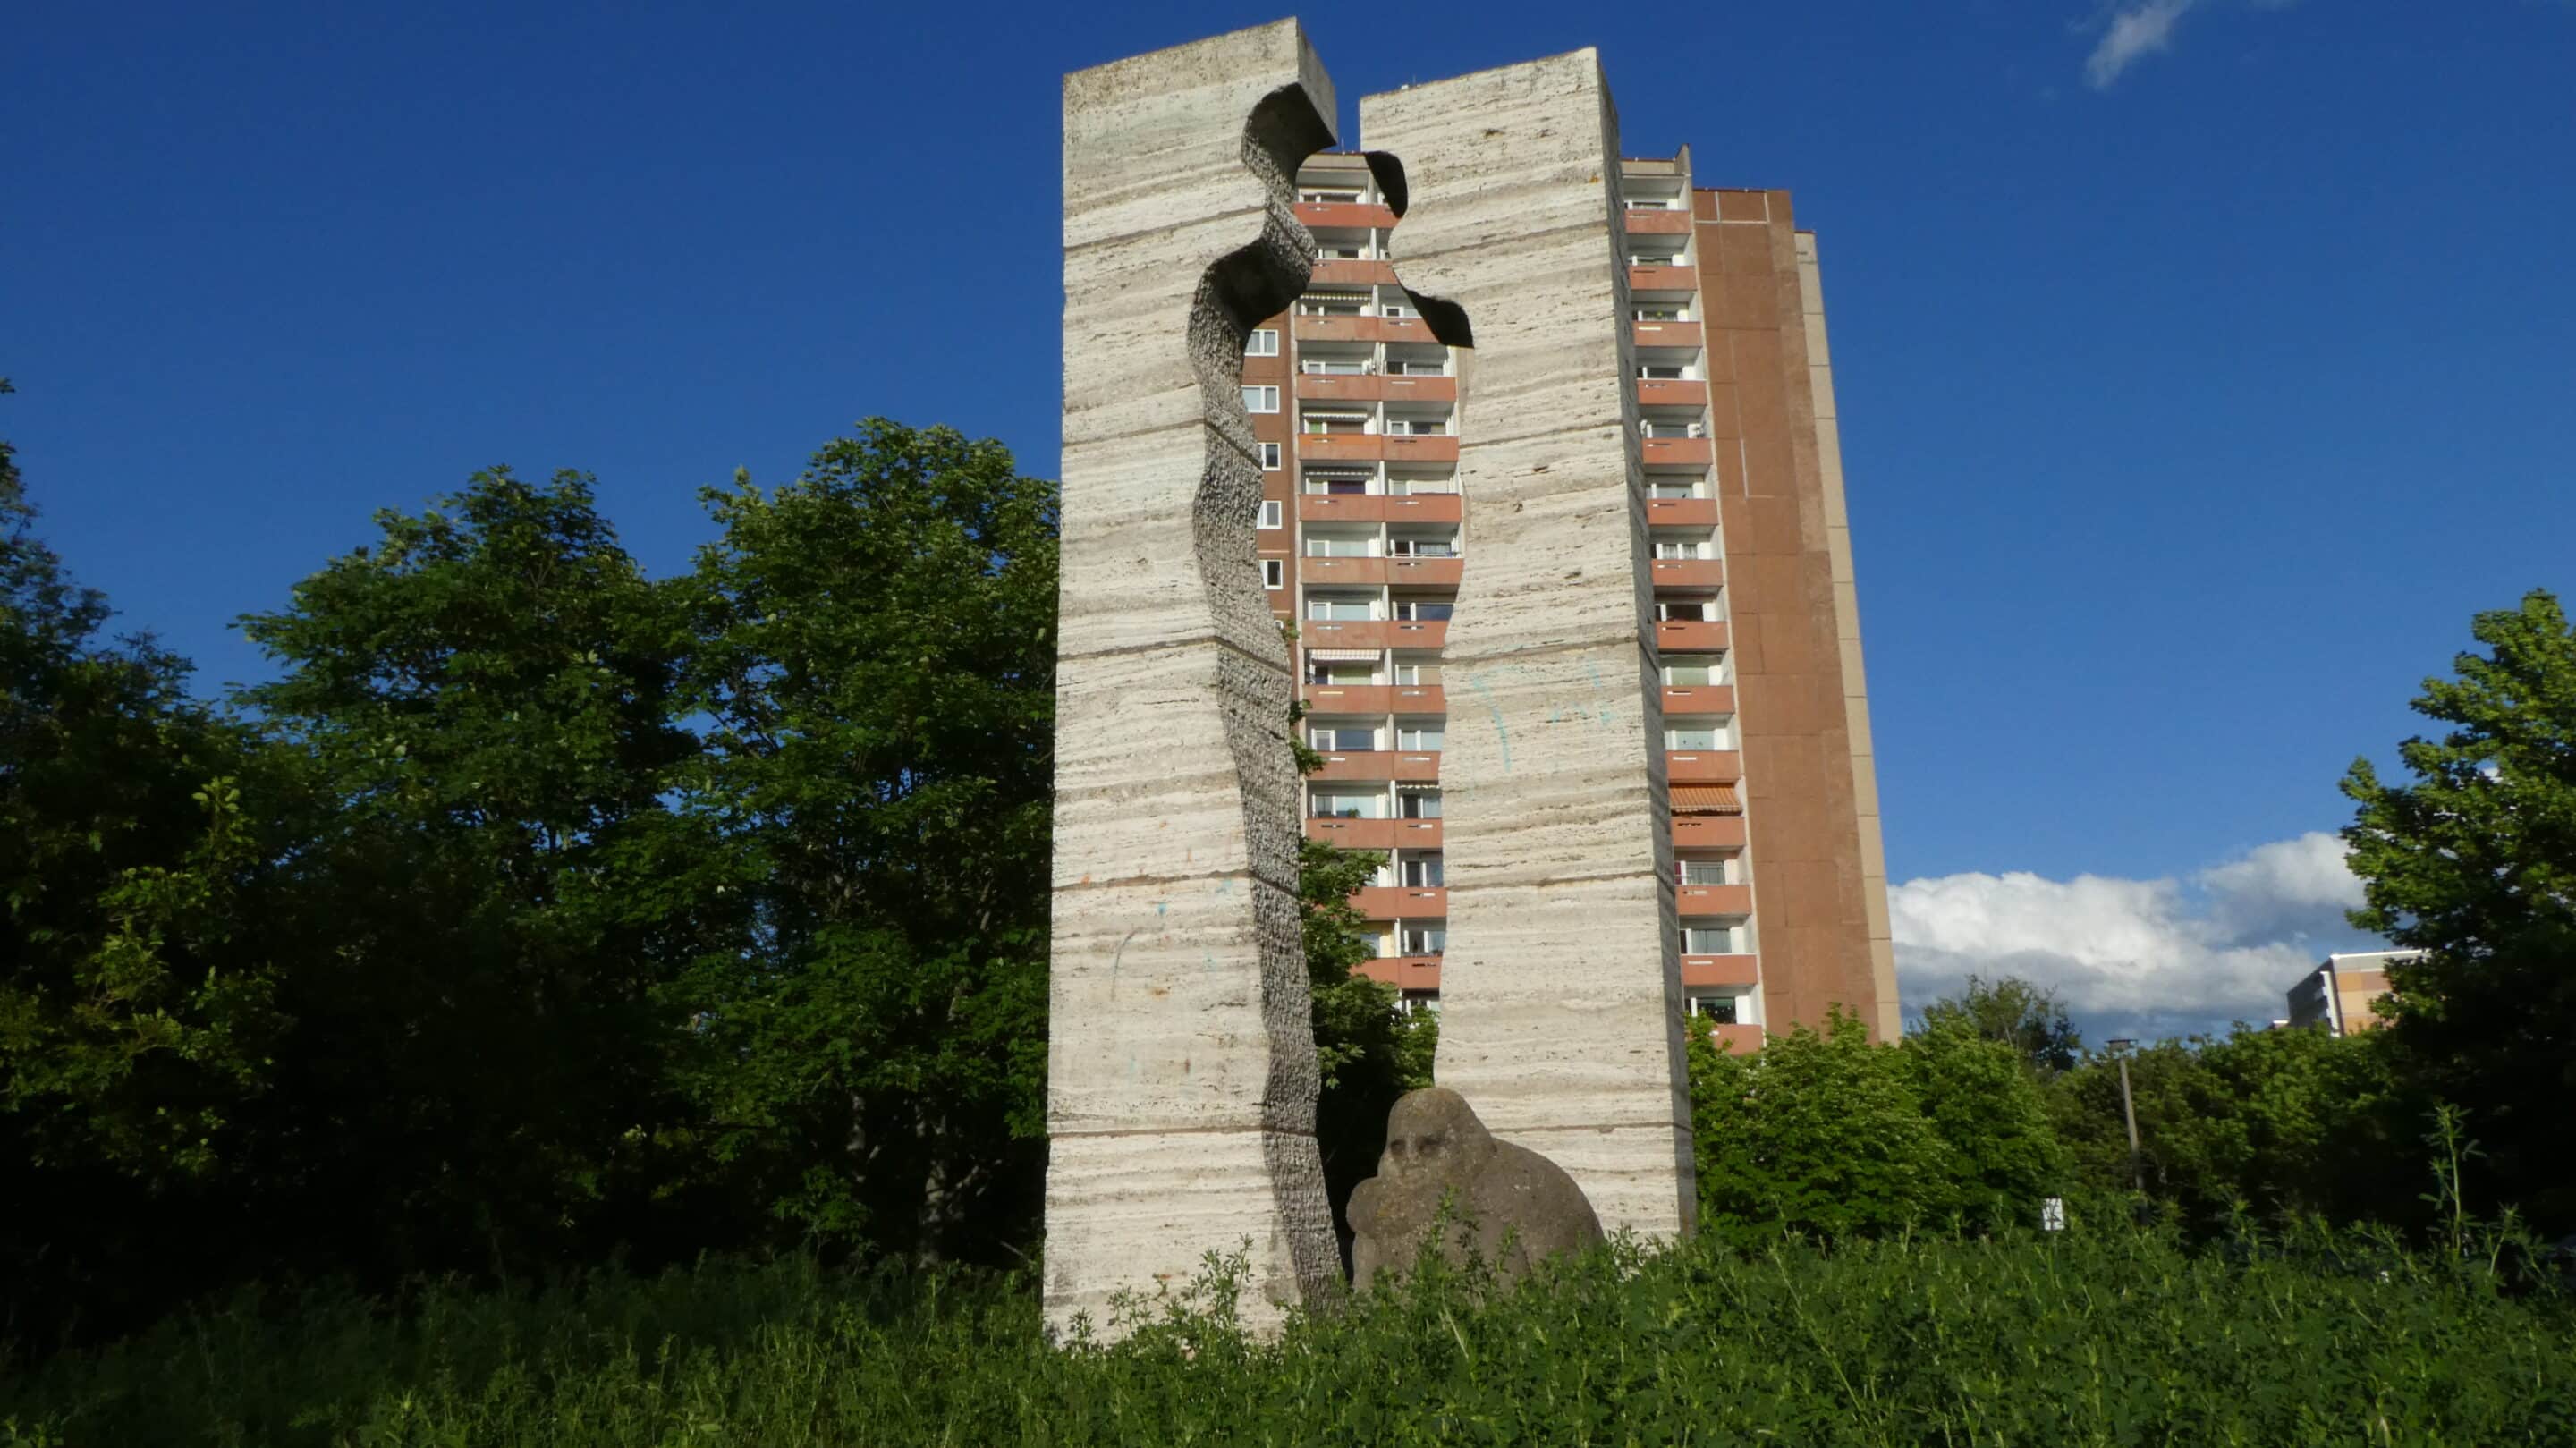 Denkmal Herrenberg mit Hochhaus und Skulptur.